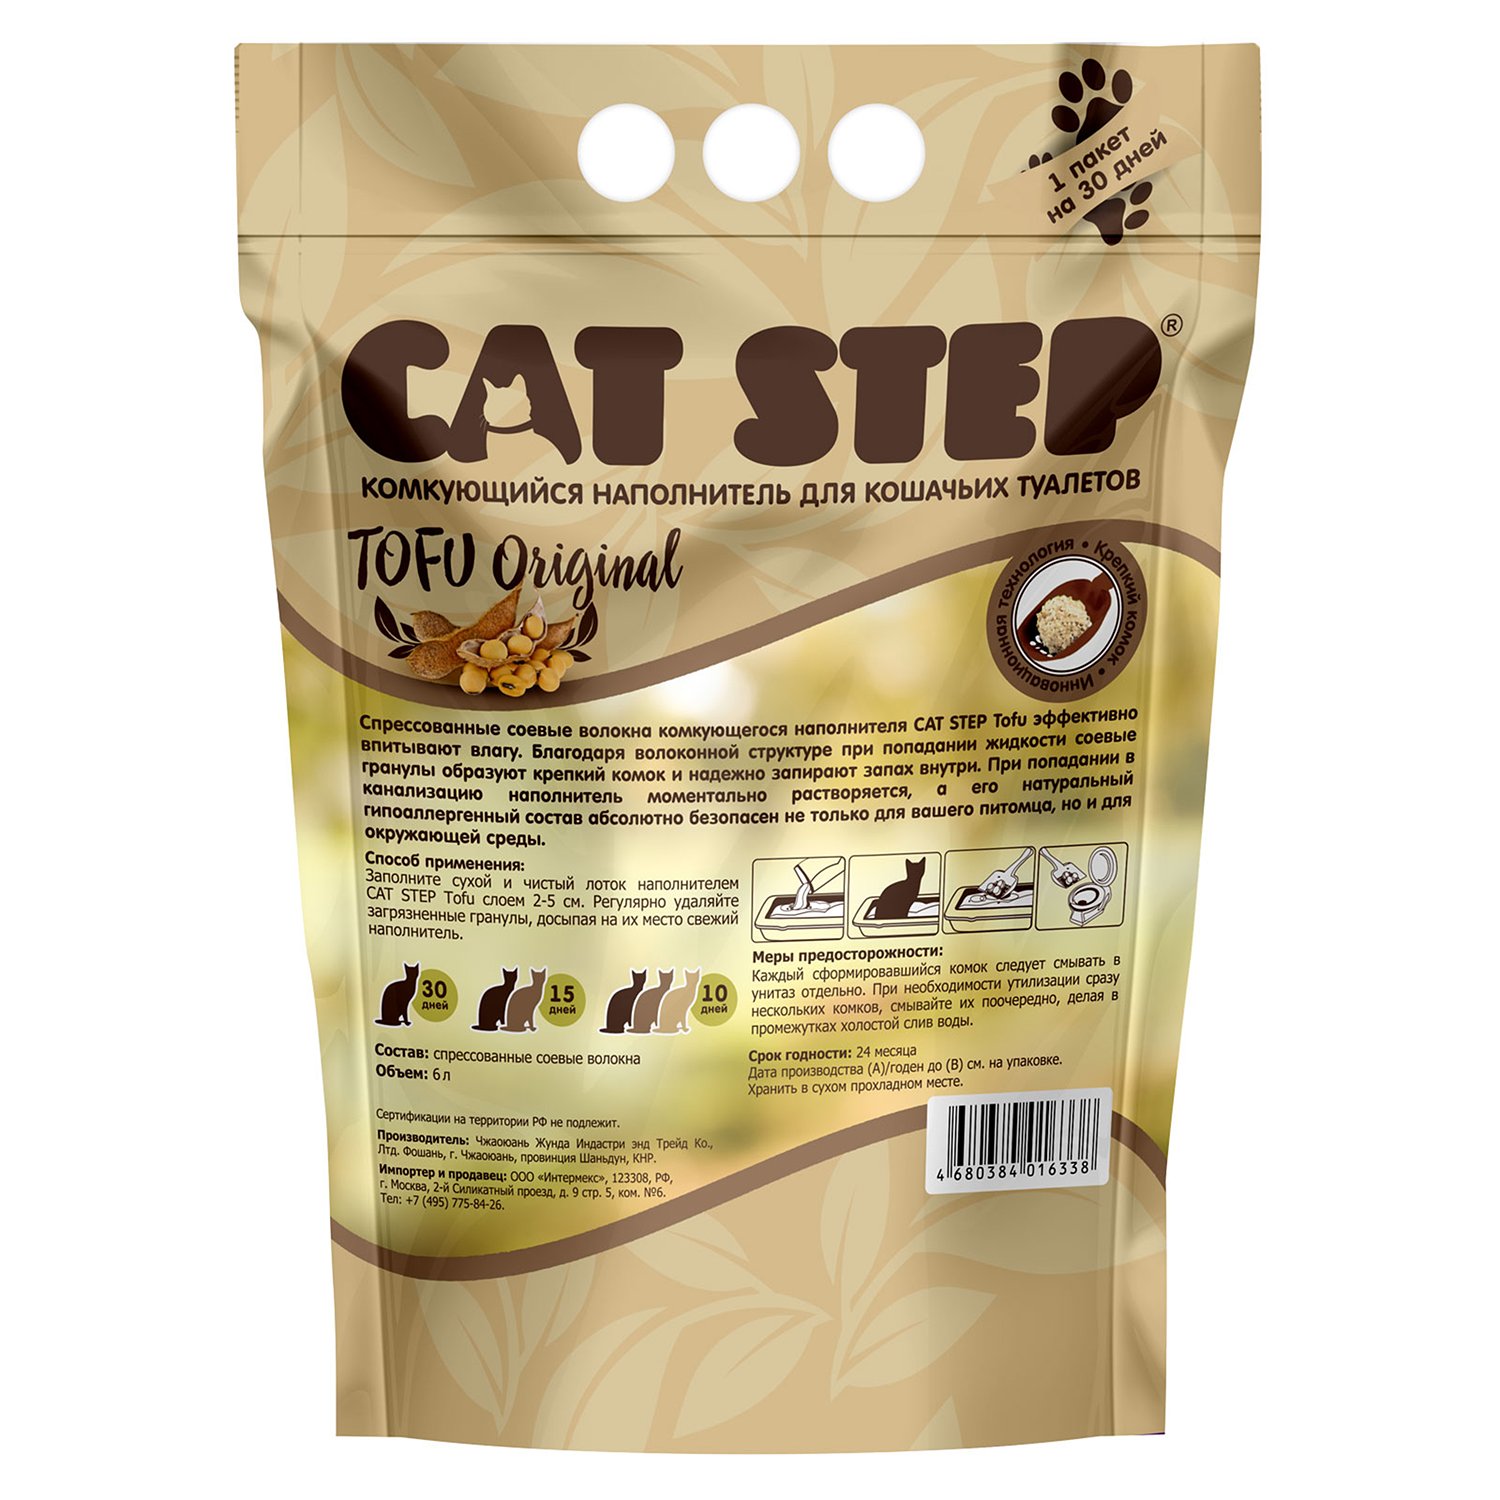 Наполнитель Cat Step Tofu Original для кошачьего туалета, растительный комкующийся, 12 л